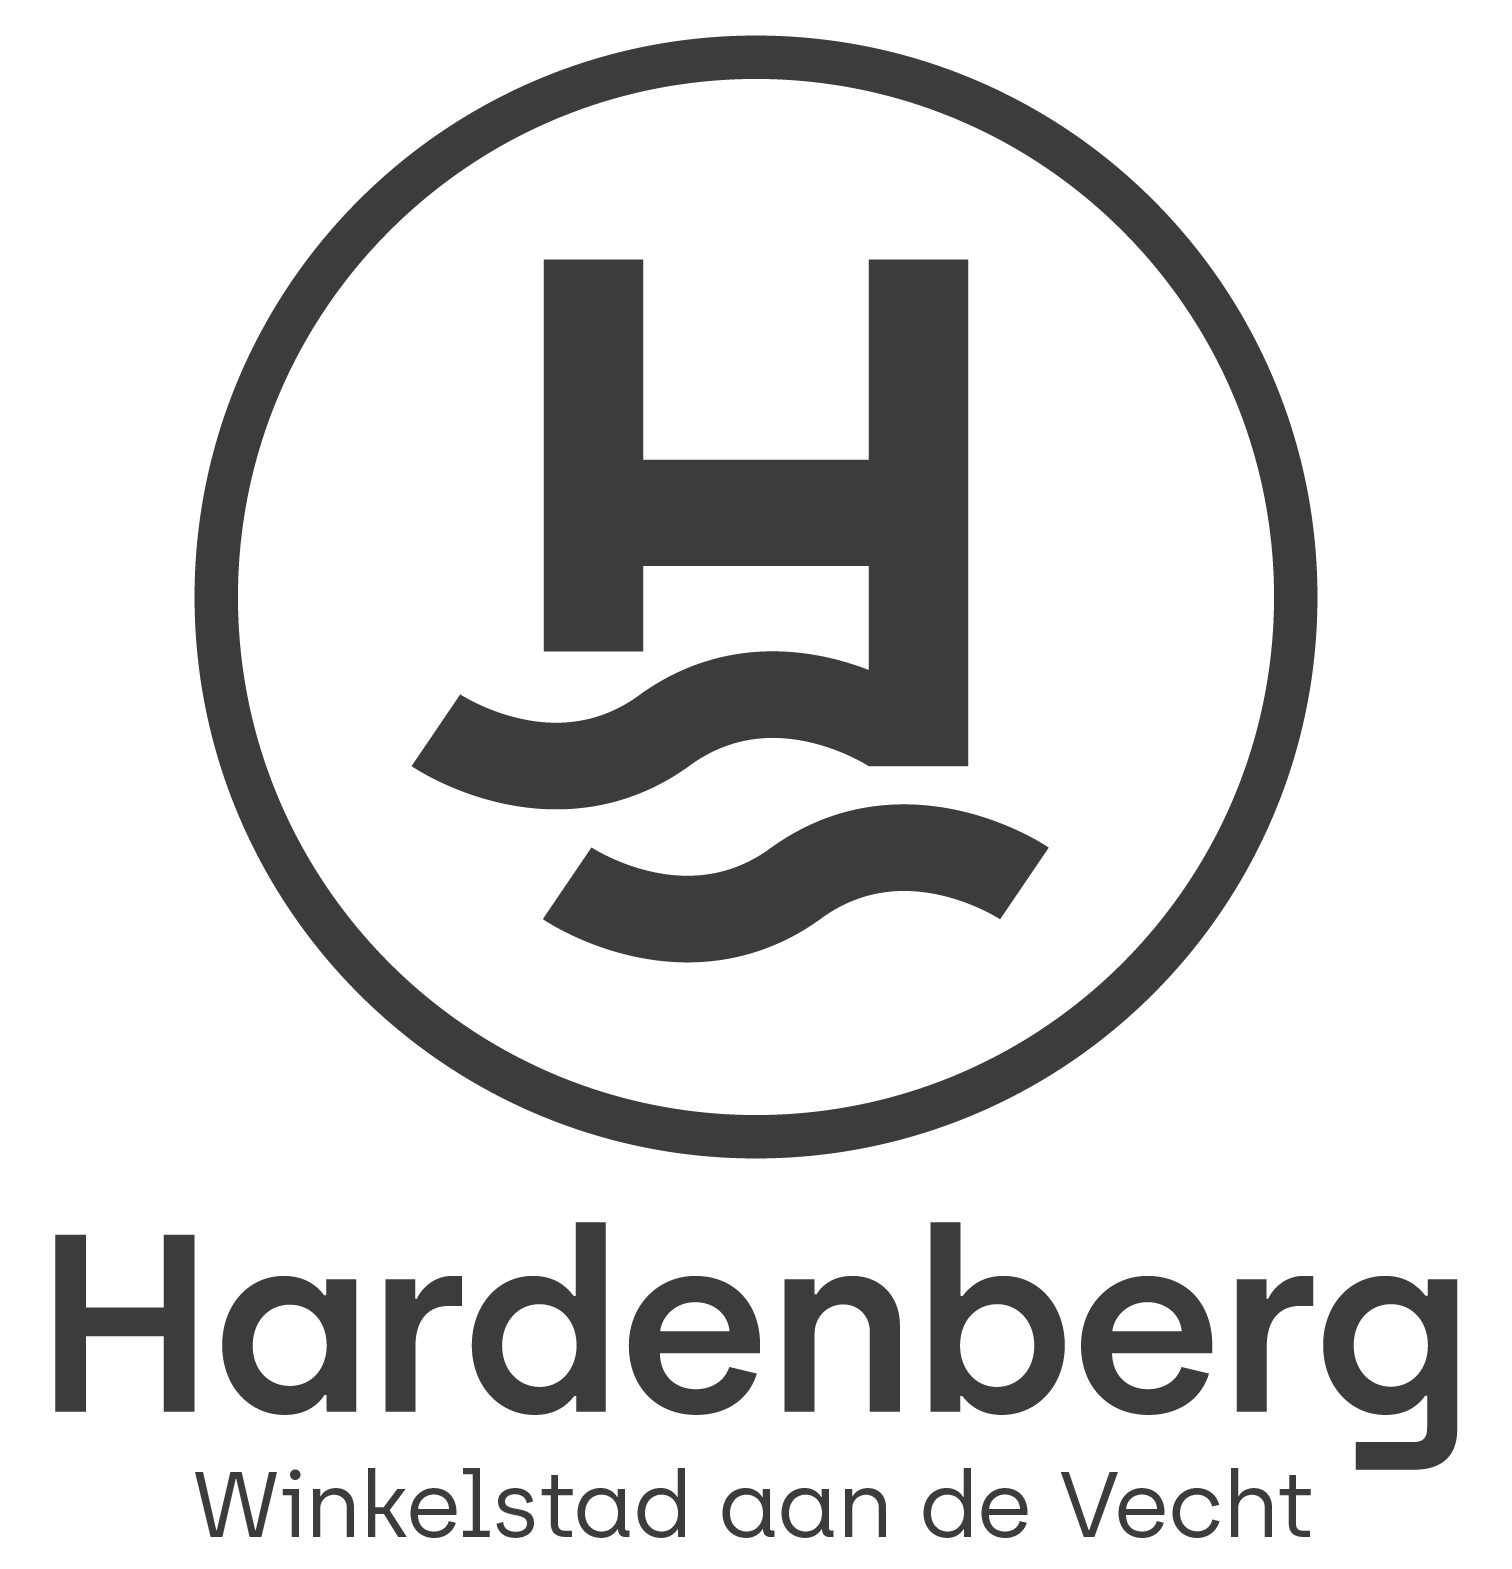 Hoorn Beddenhuis - Winkelstad Hardenberg